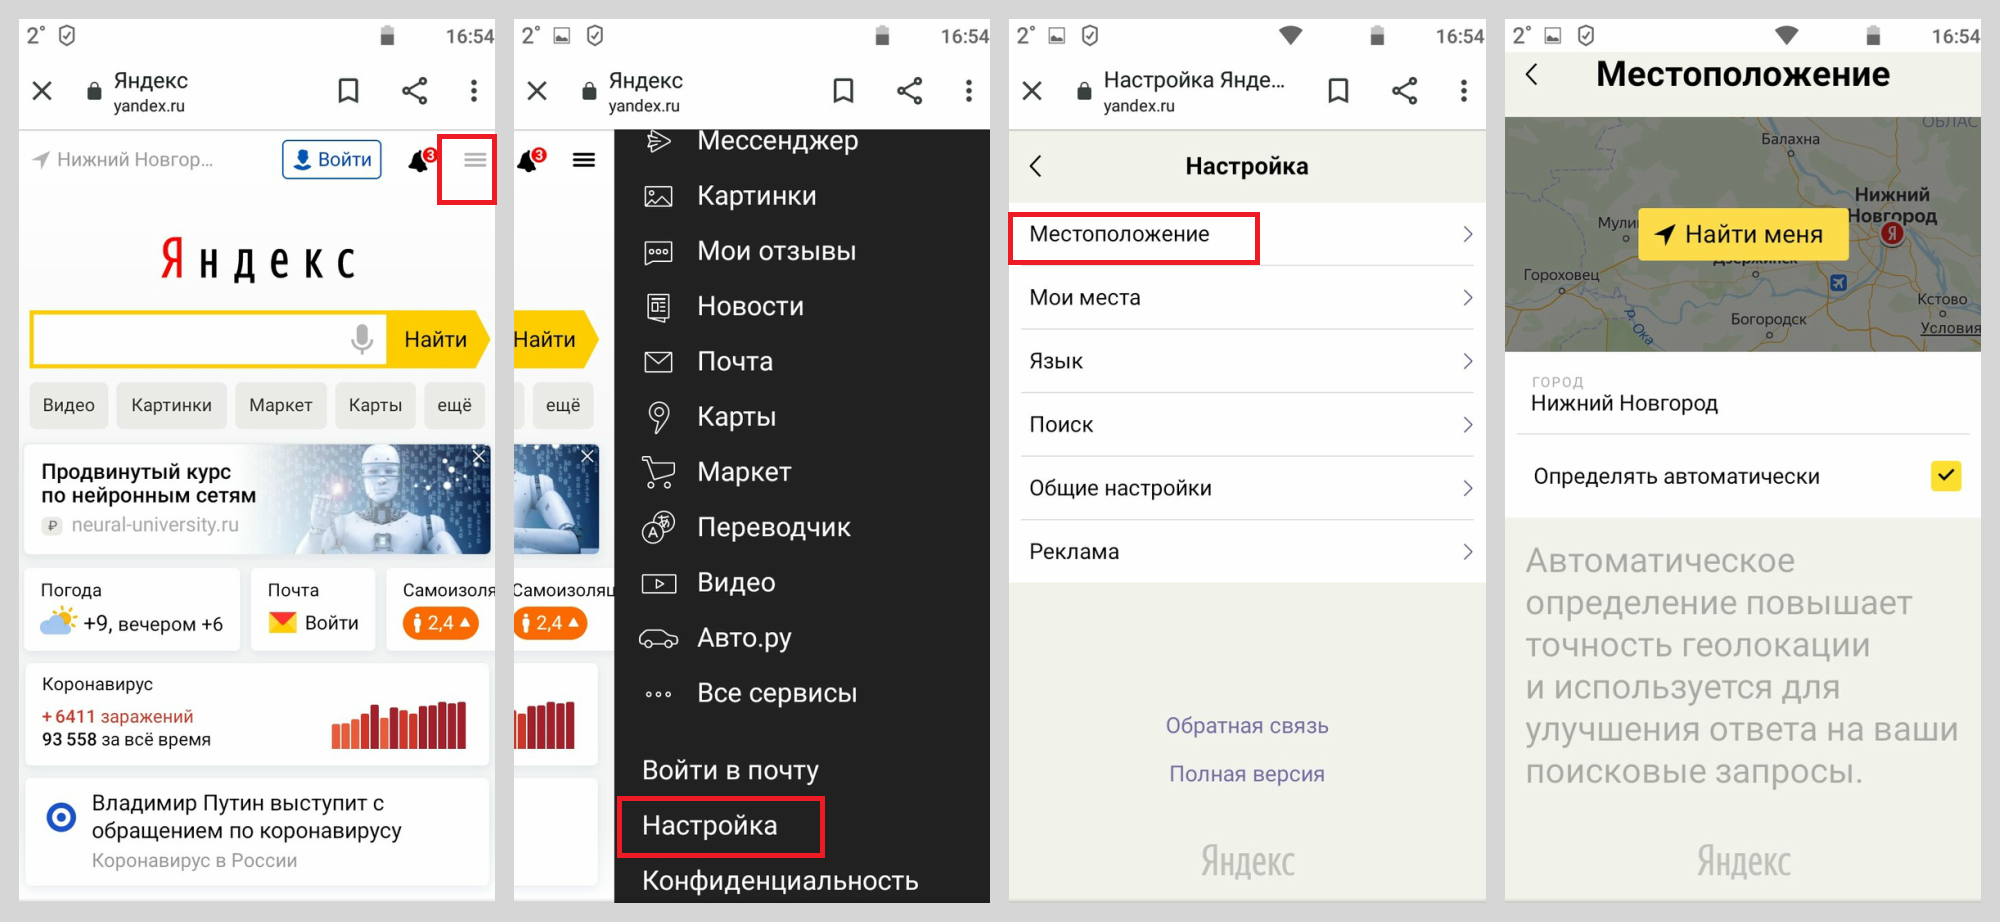 Как сменить геолокацию. Изменить город в Яндексе на телефоне. Изменить местоположение в Яндексе на телефоне. Как поменять город в Яндексе.